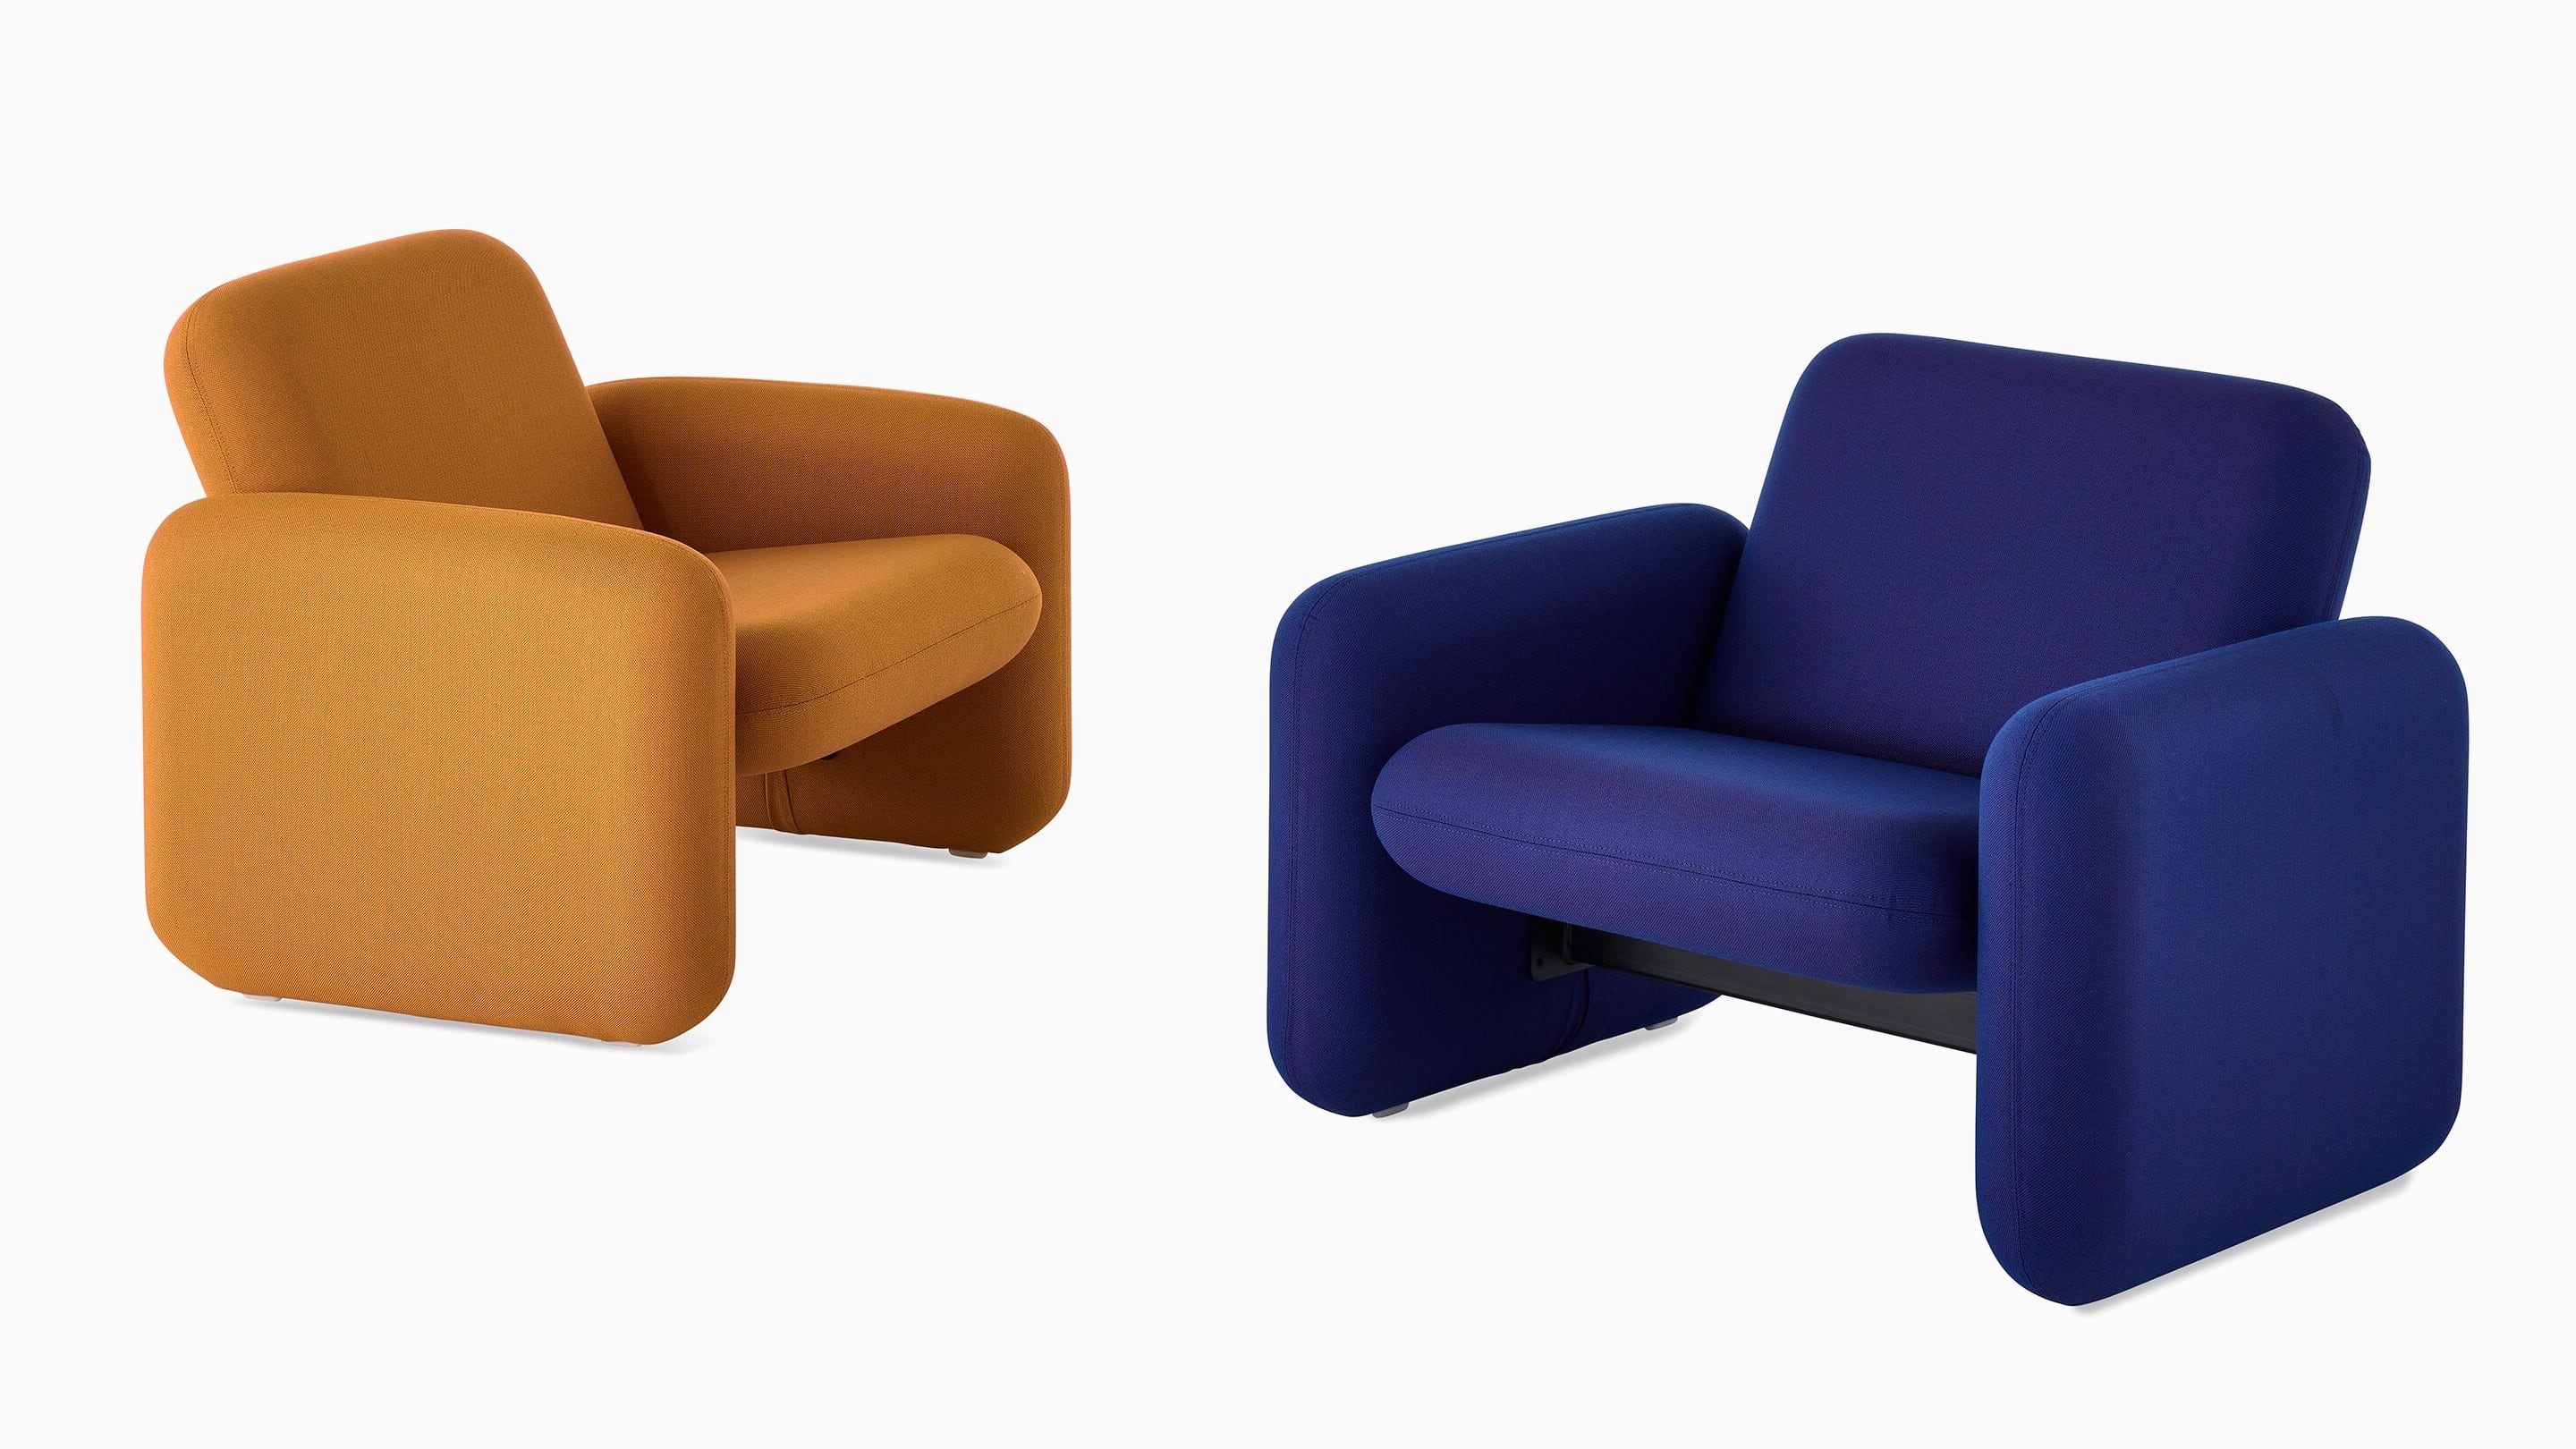 Zwei Sessel der Wilkes Modularen Sofagruppe, die sich schräg gegenüber stehen. Der Sessel links ist Dunkelgelb, der Sessel rechts ist Blau.